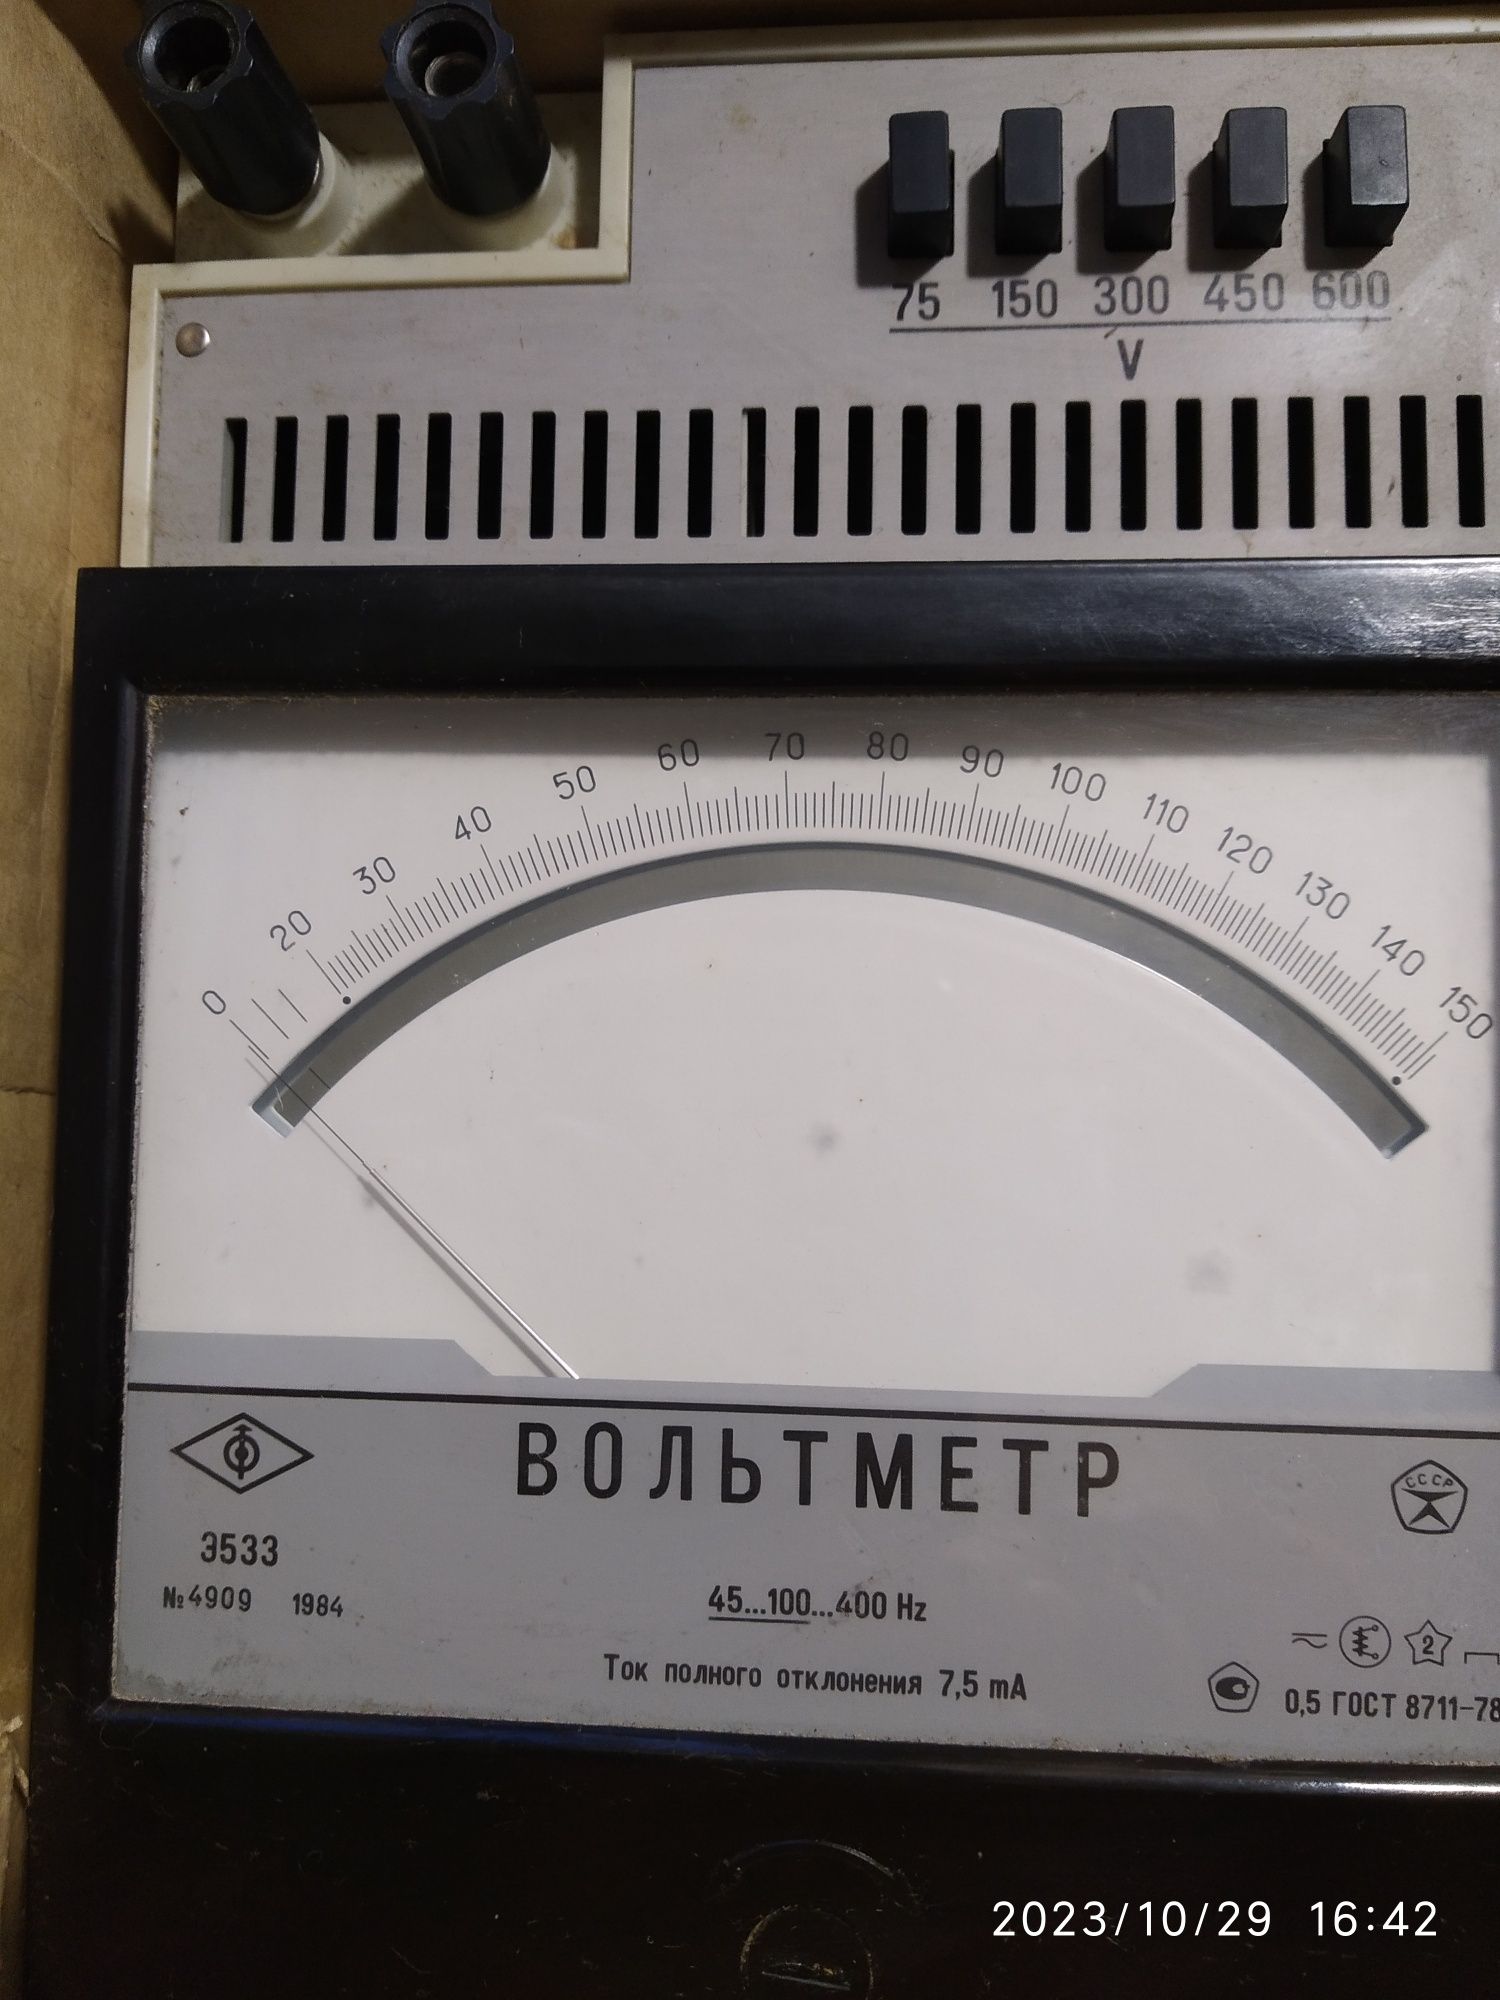 Вольтметр Э533 для измерения силы тока